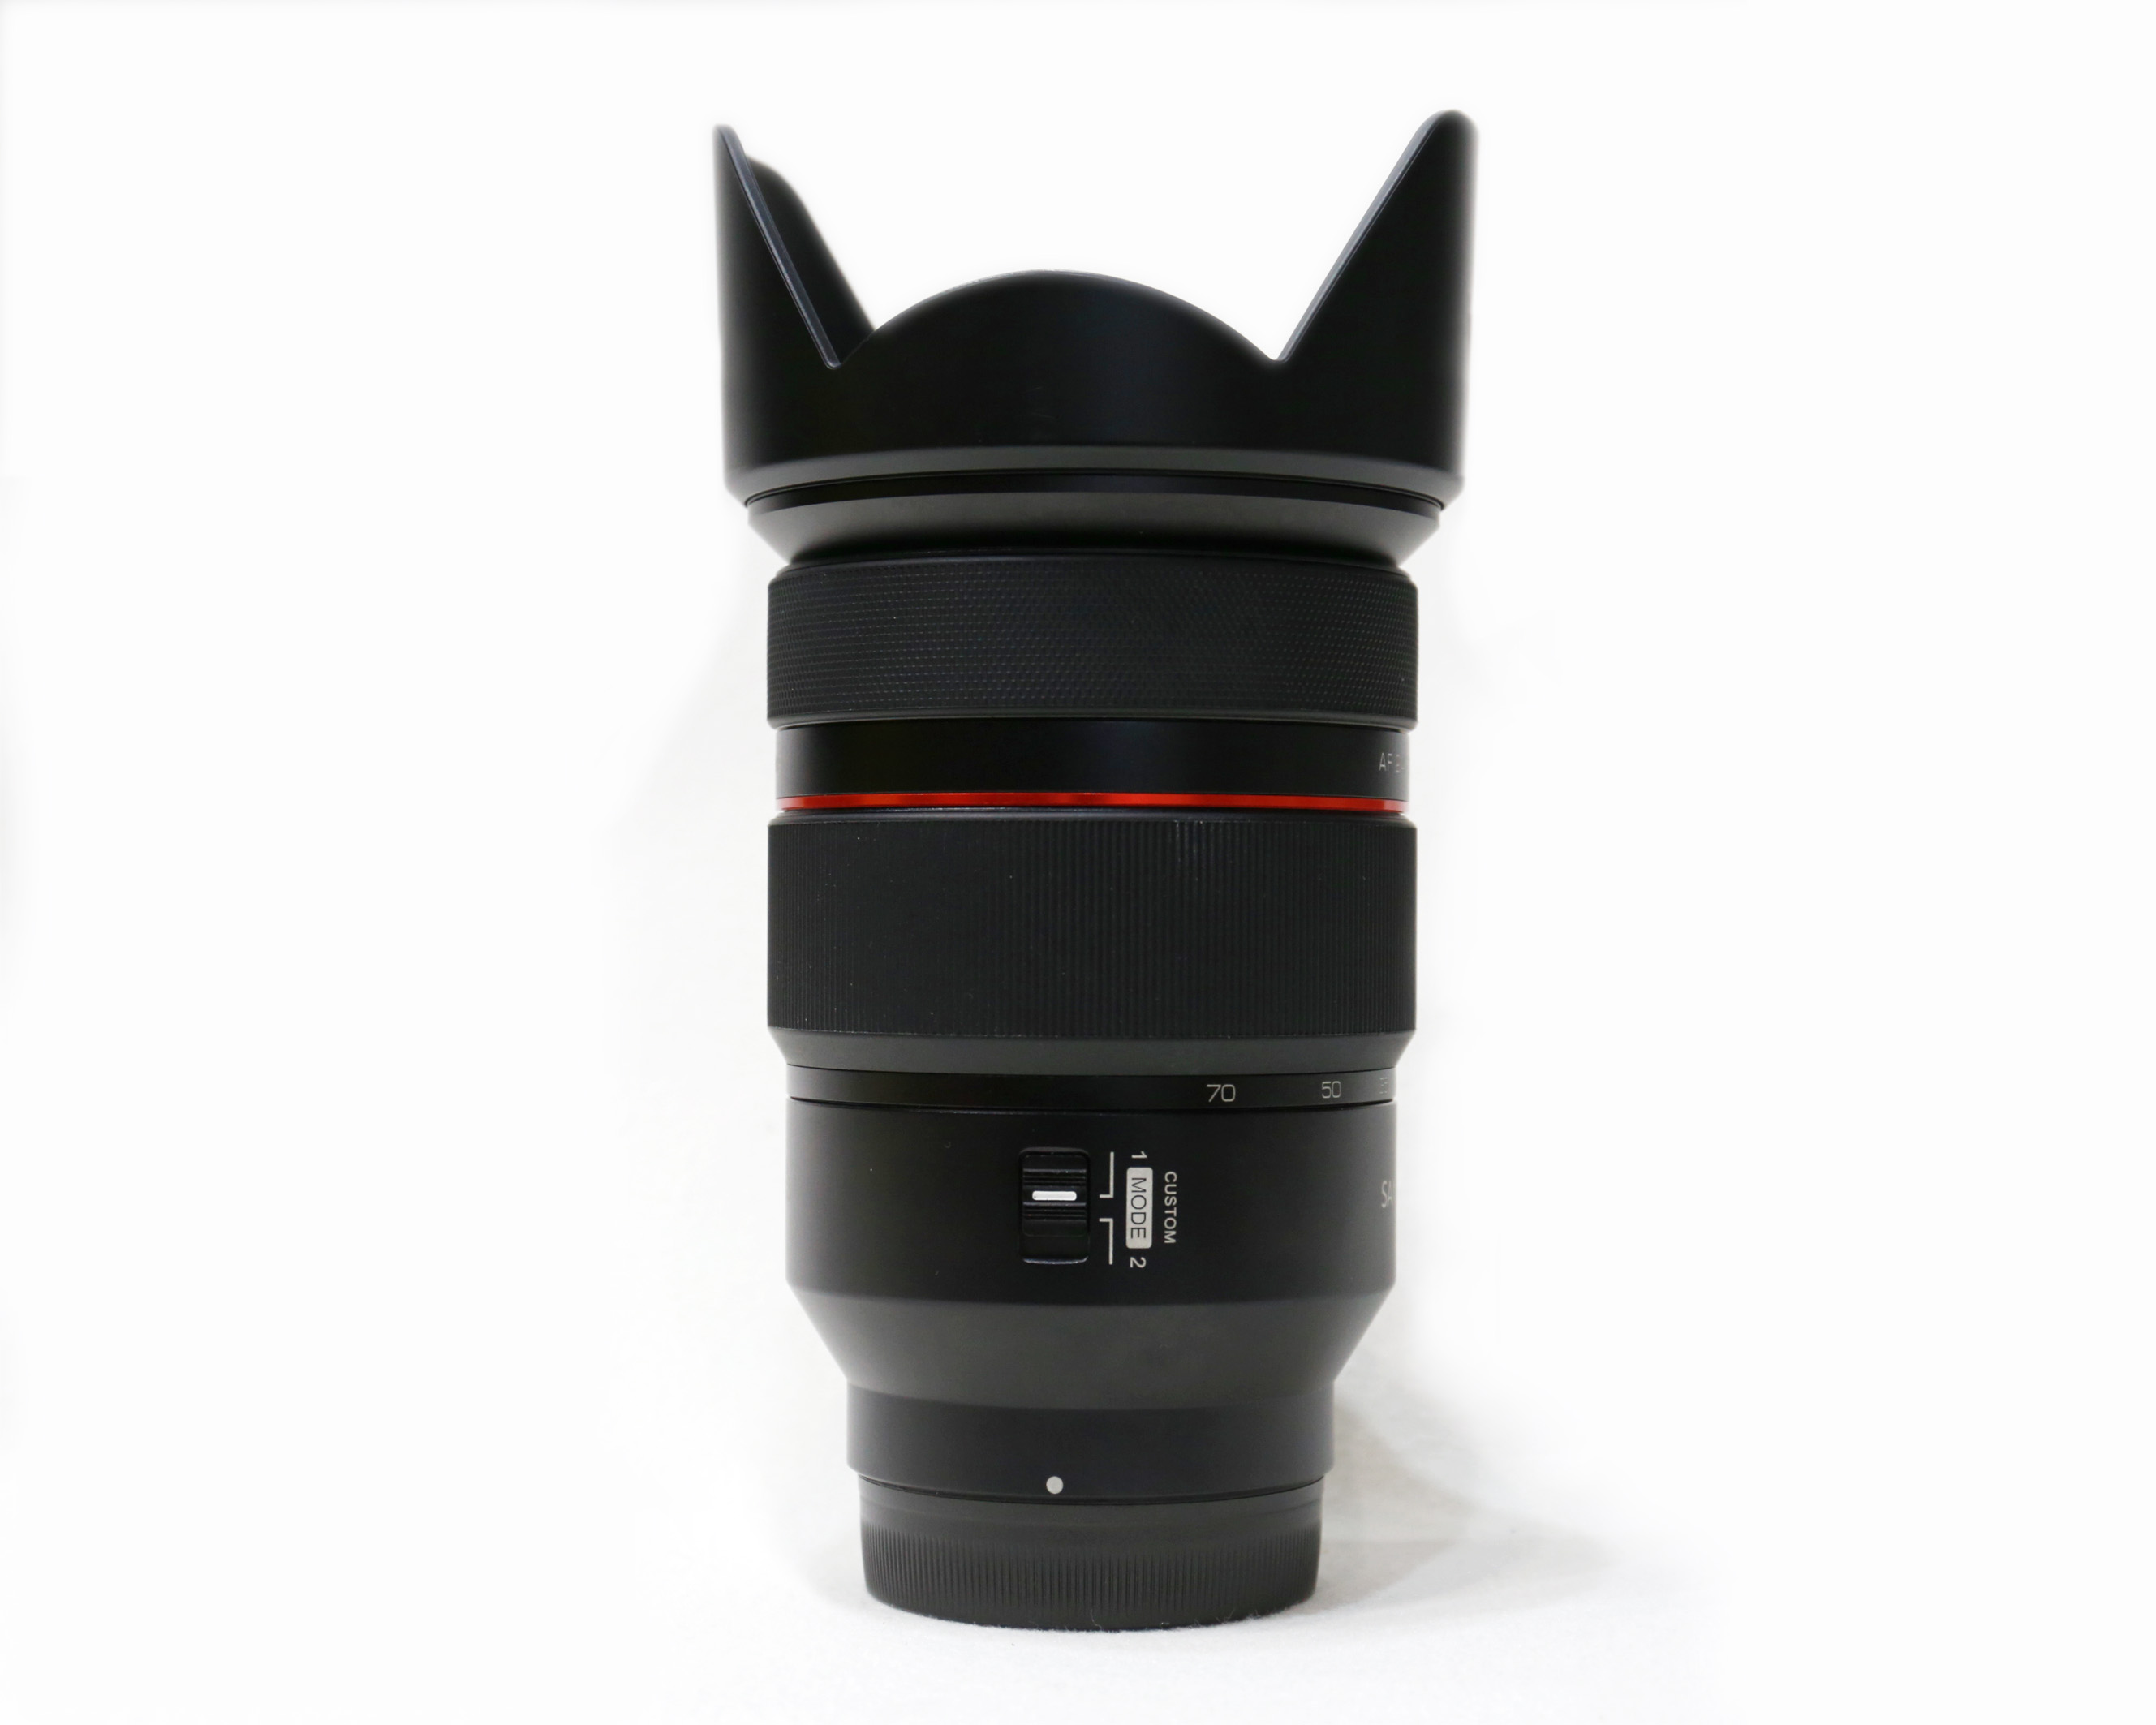 Ống kính Samyang 24-70mm f/2.8 AF for Sony E